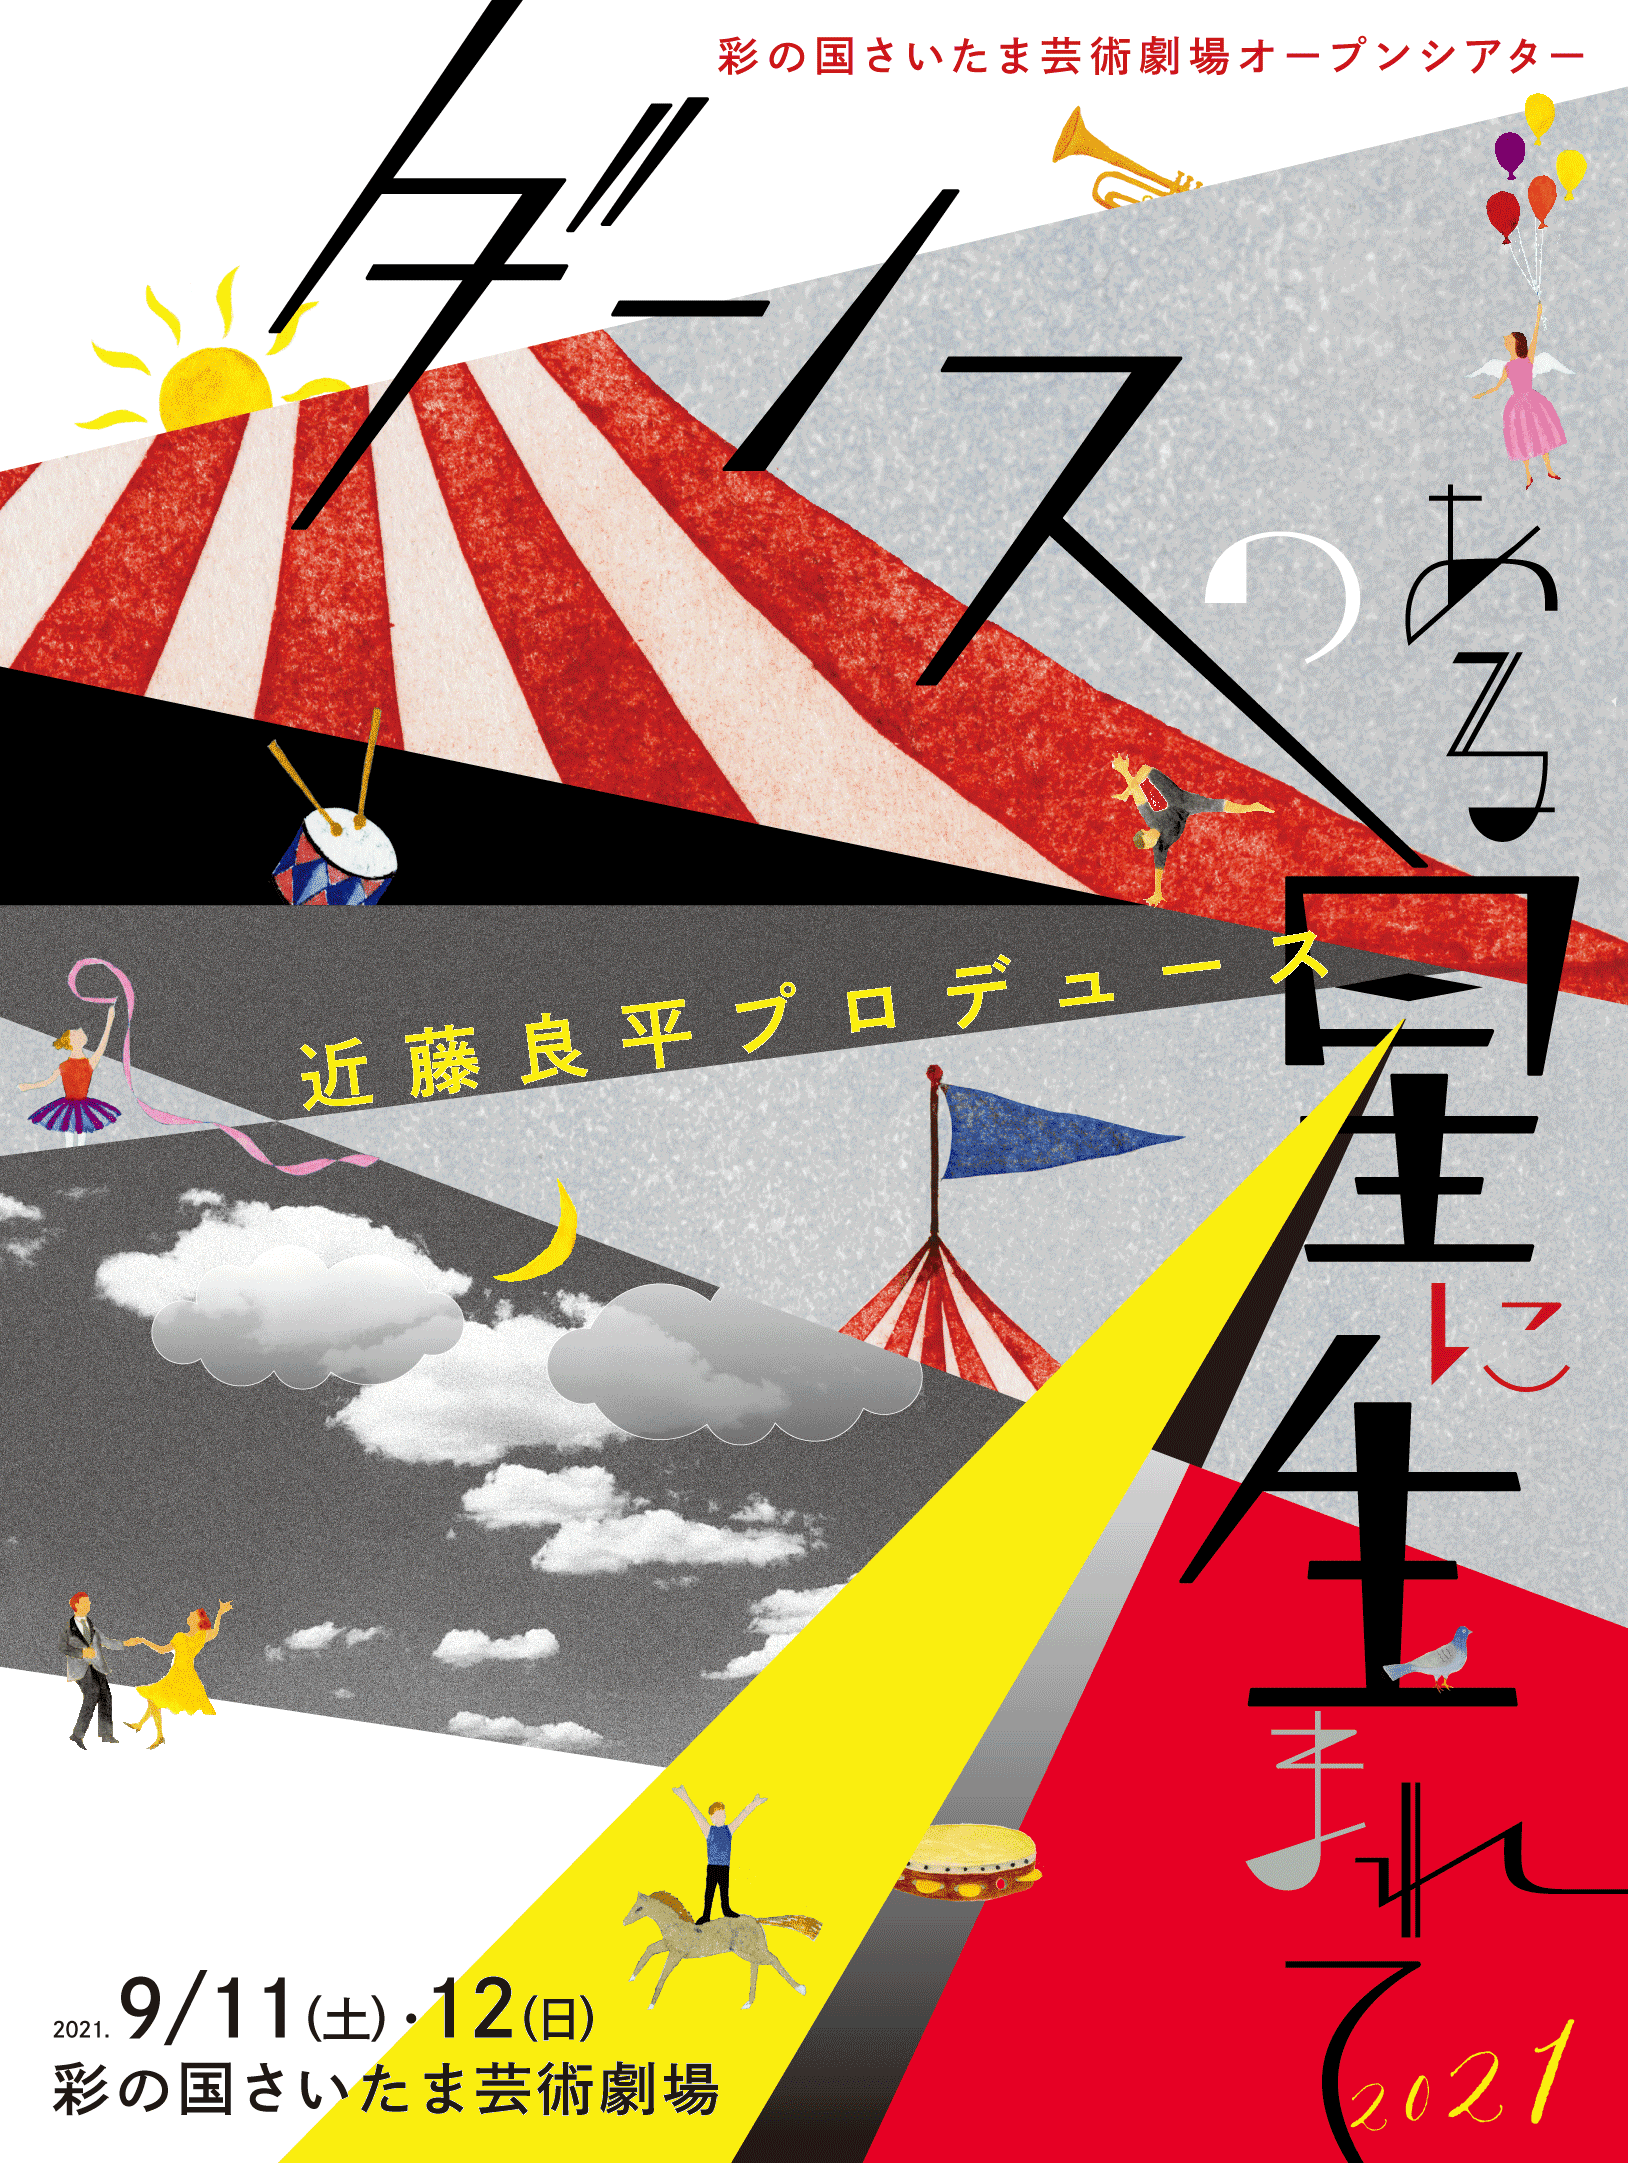 近藤良平プロデュース 彩の国さいたま芸術劇場オープンシアター 「ダンスのある星に生まれて2021」